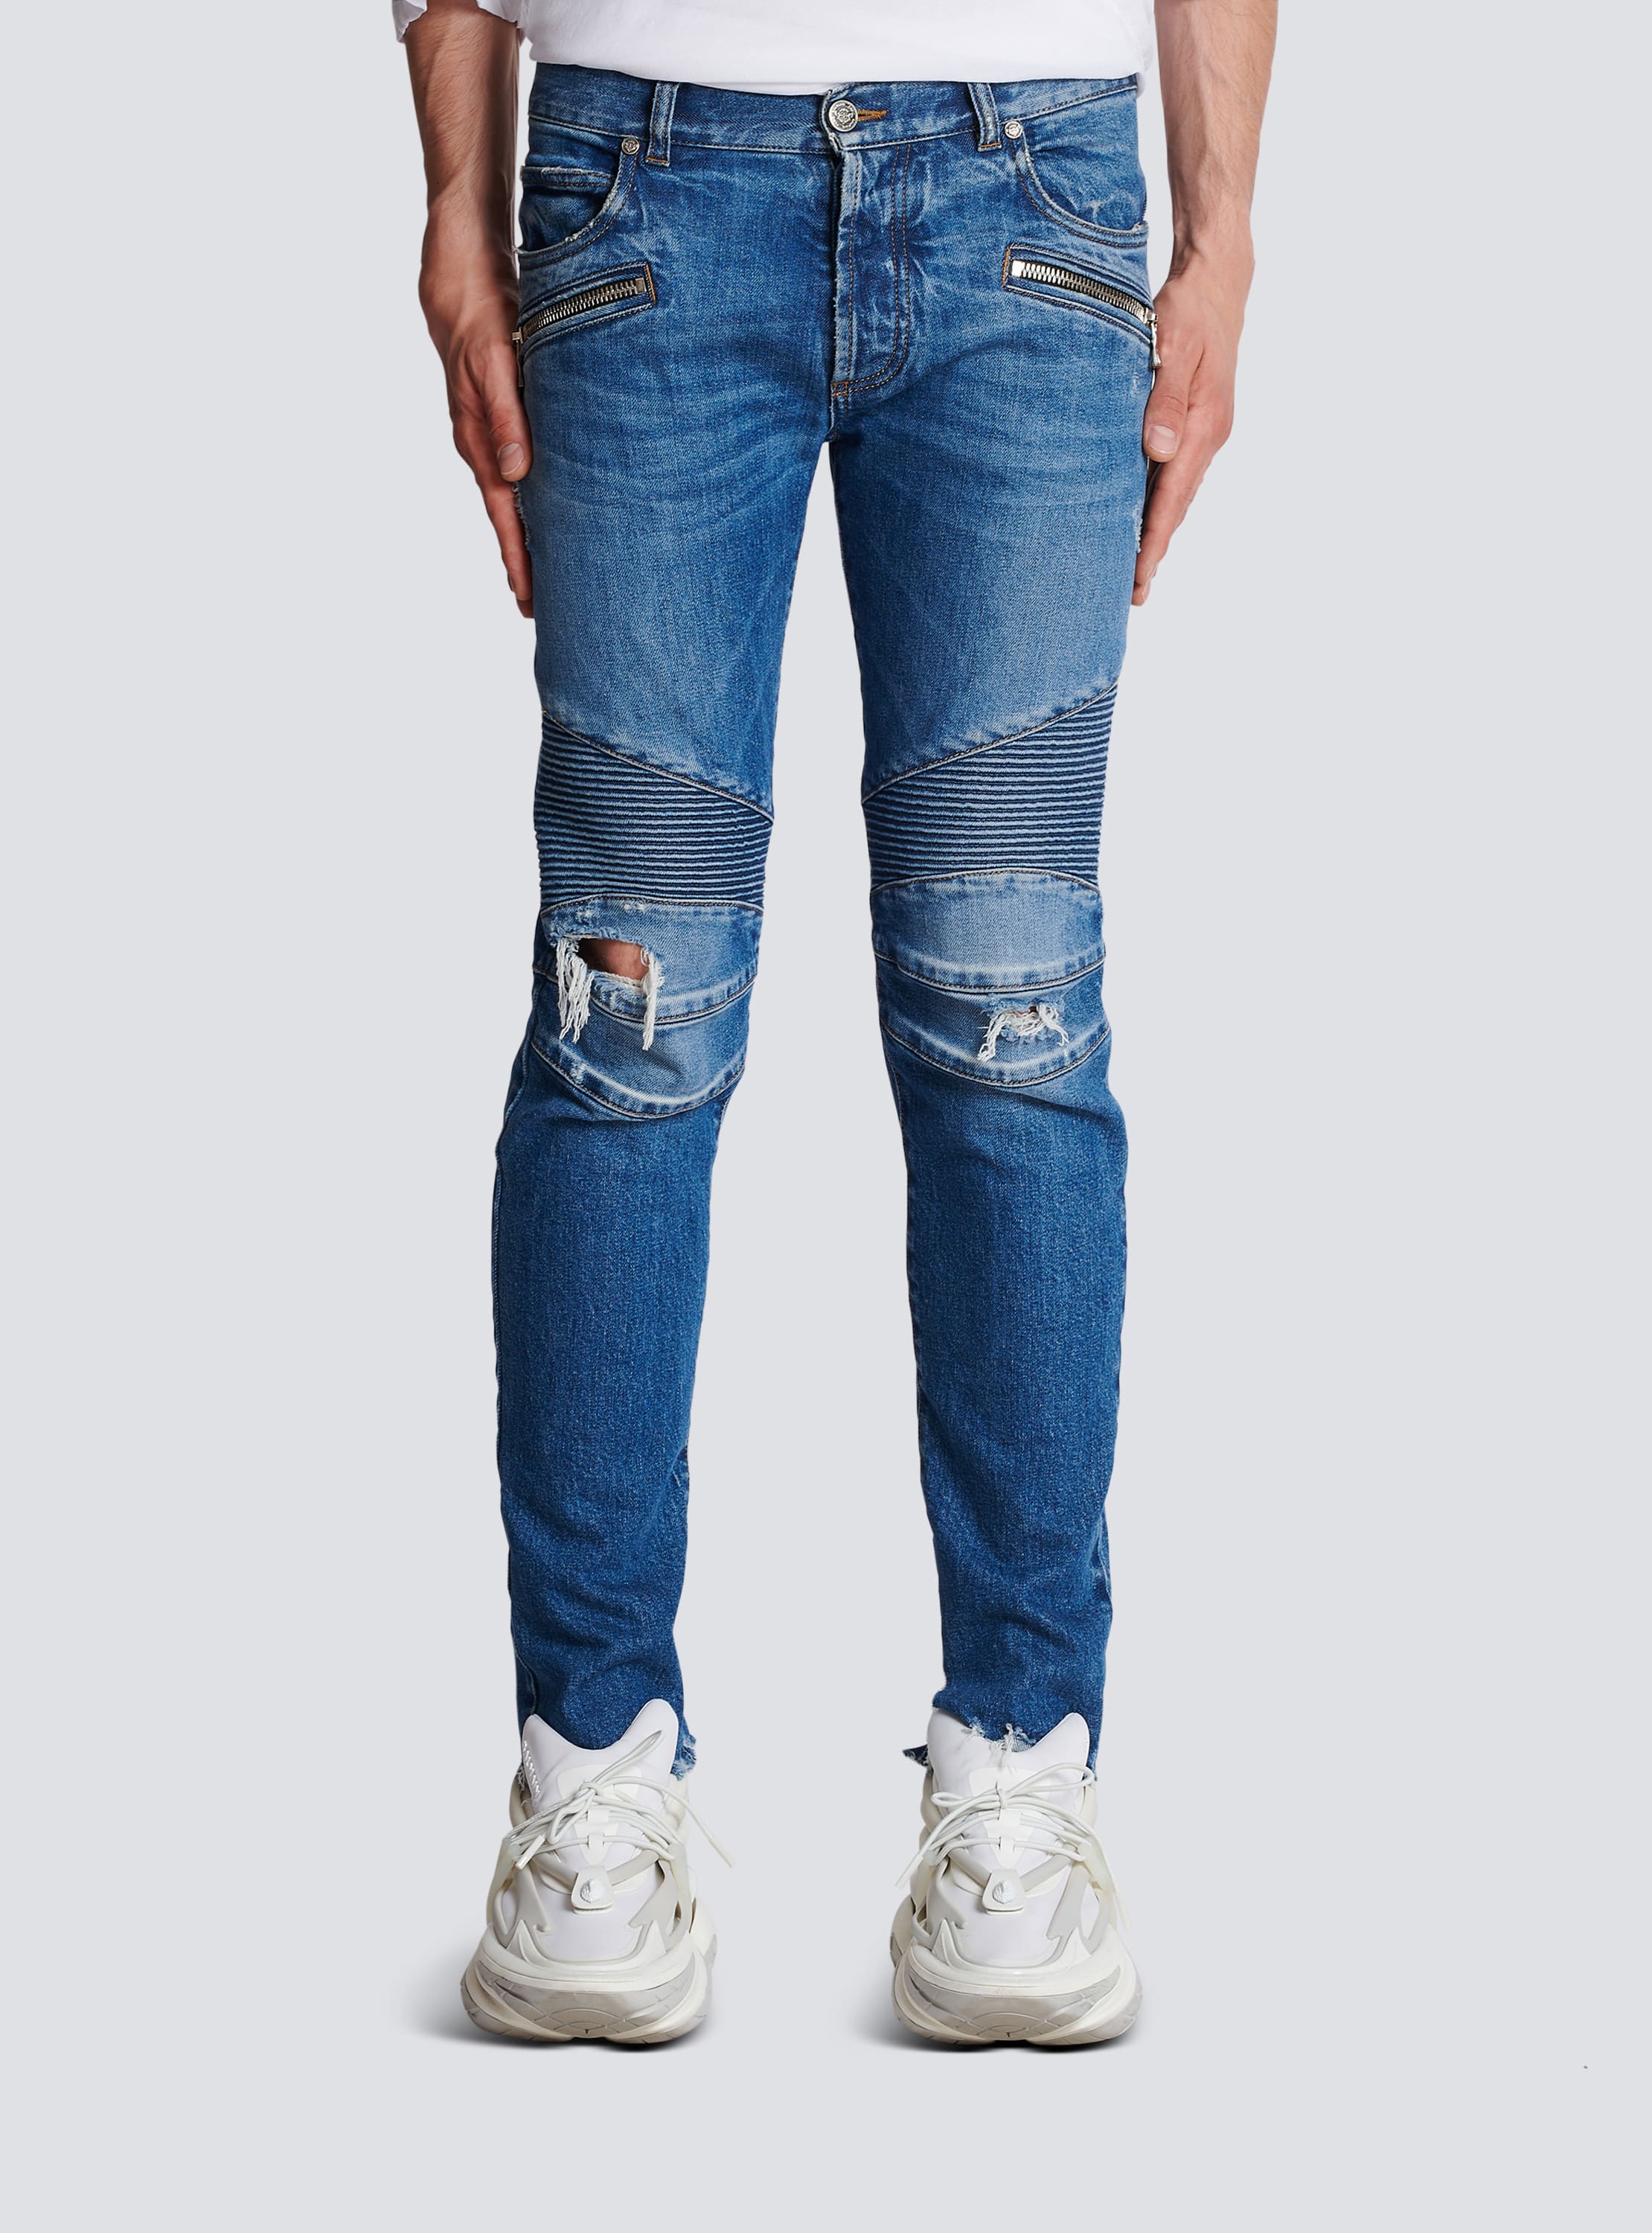 Authentic Balmain Moto Jeans - Light Blue - Size 30